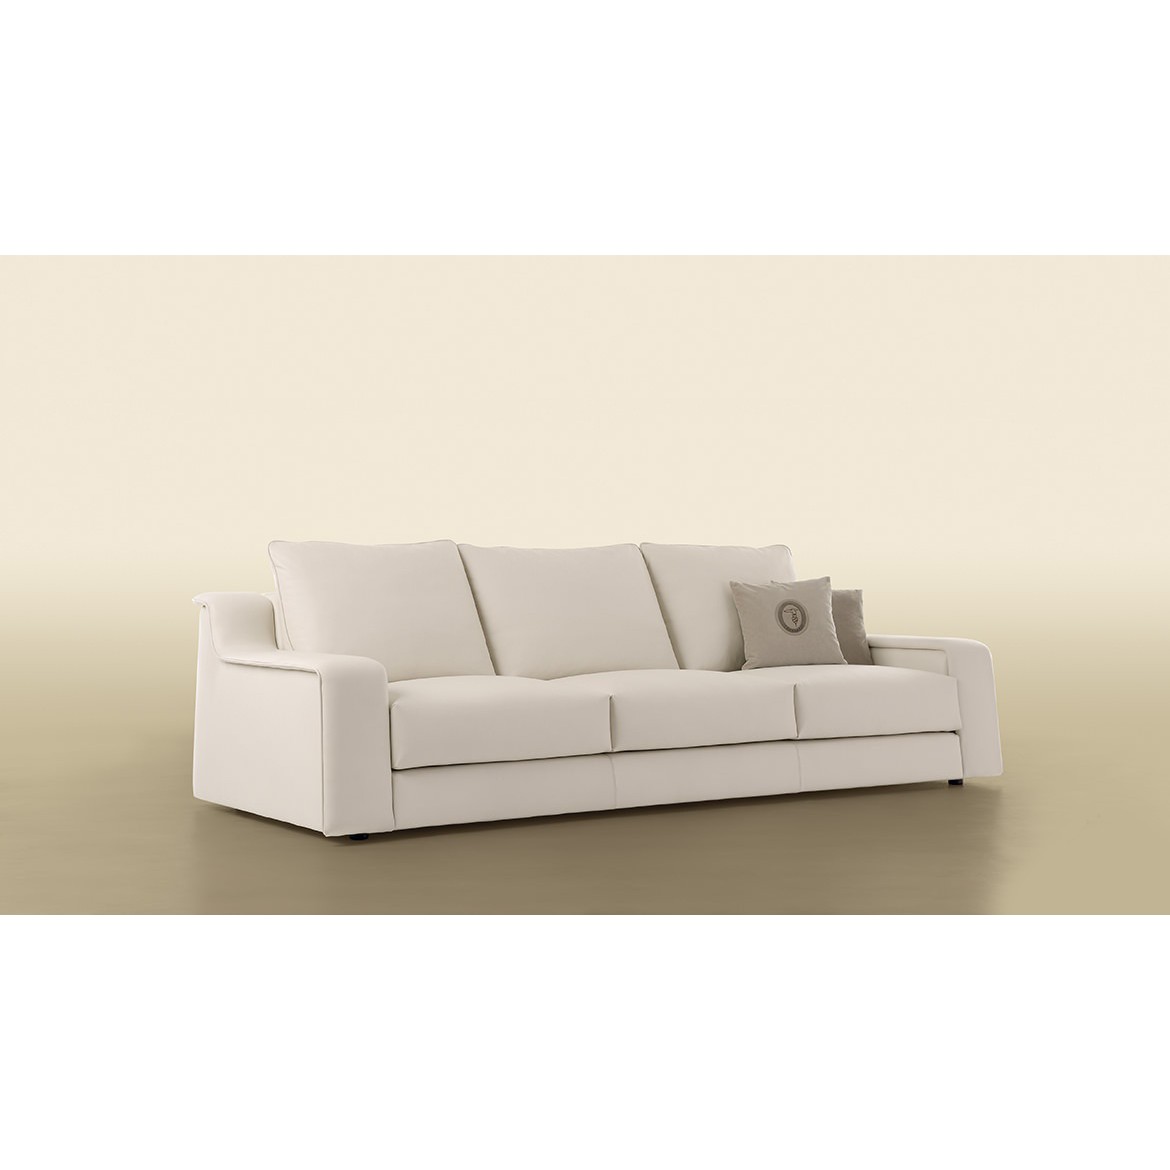 Мебель на заказ / Диван, стиль хай-тек, дизайн Trussardi Casa, модель Sofa 914